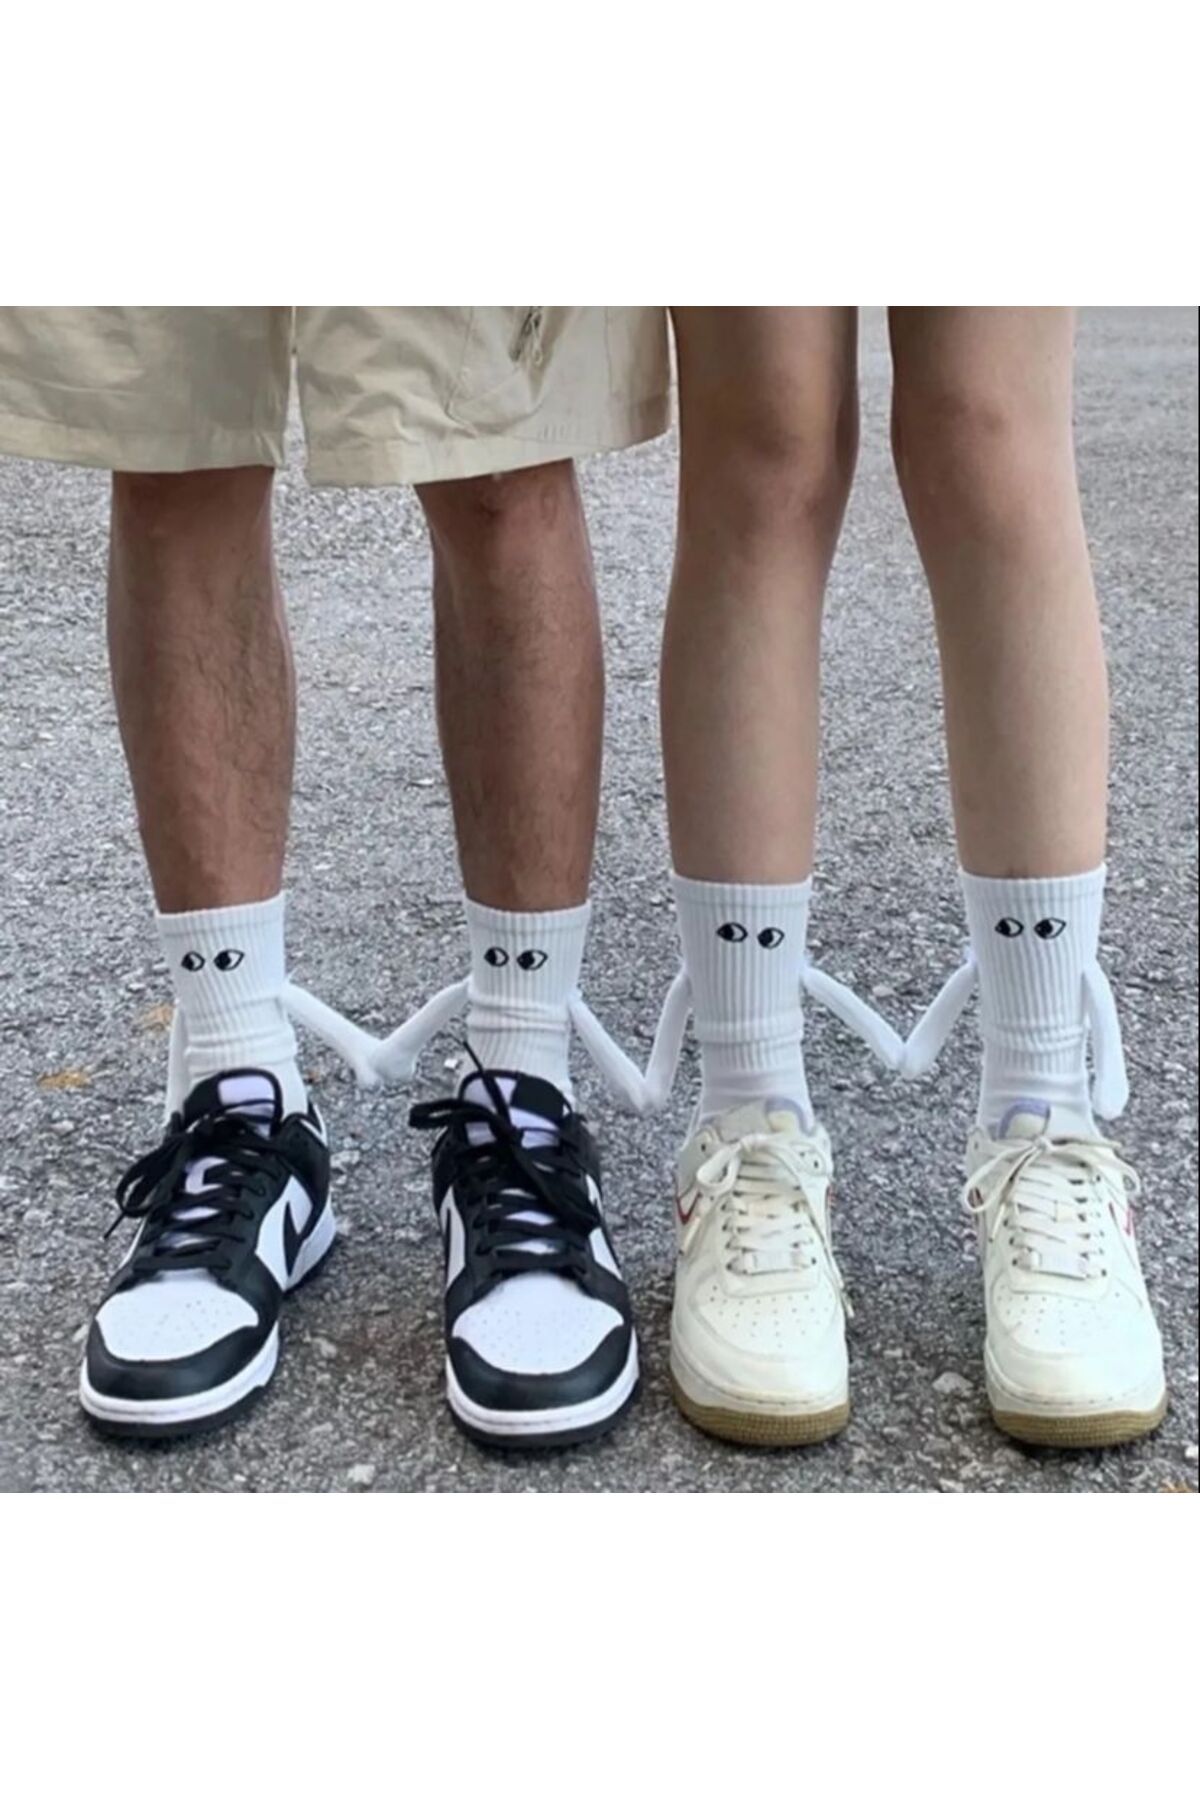 BAW PREMİUM BAW 2 Adet Beyaz Mıknatıslı El Ele Tutuşan Çorap Arkadaşlık Spor Çorabı : Eğlenceli Ve Konforlu